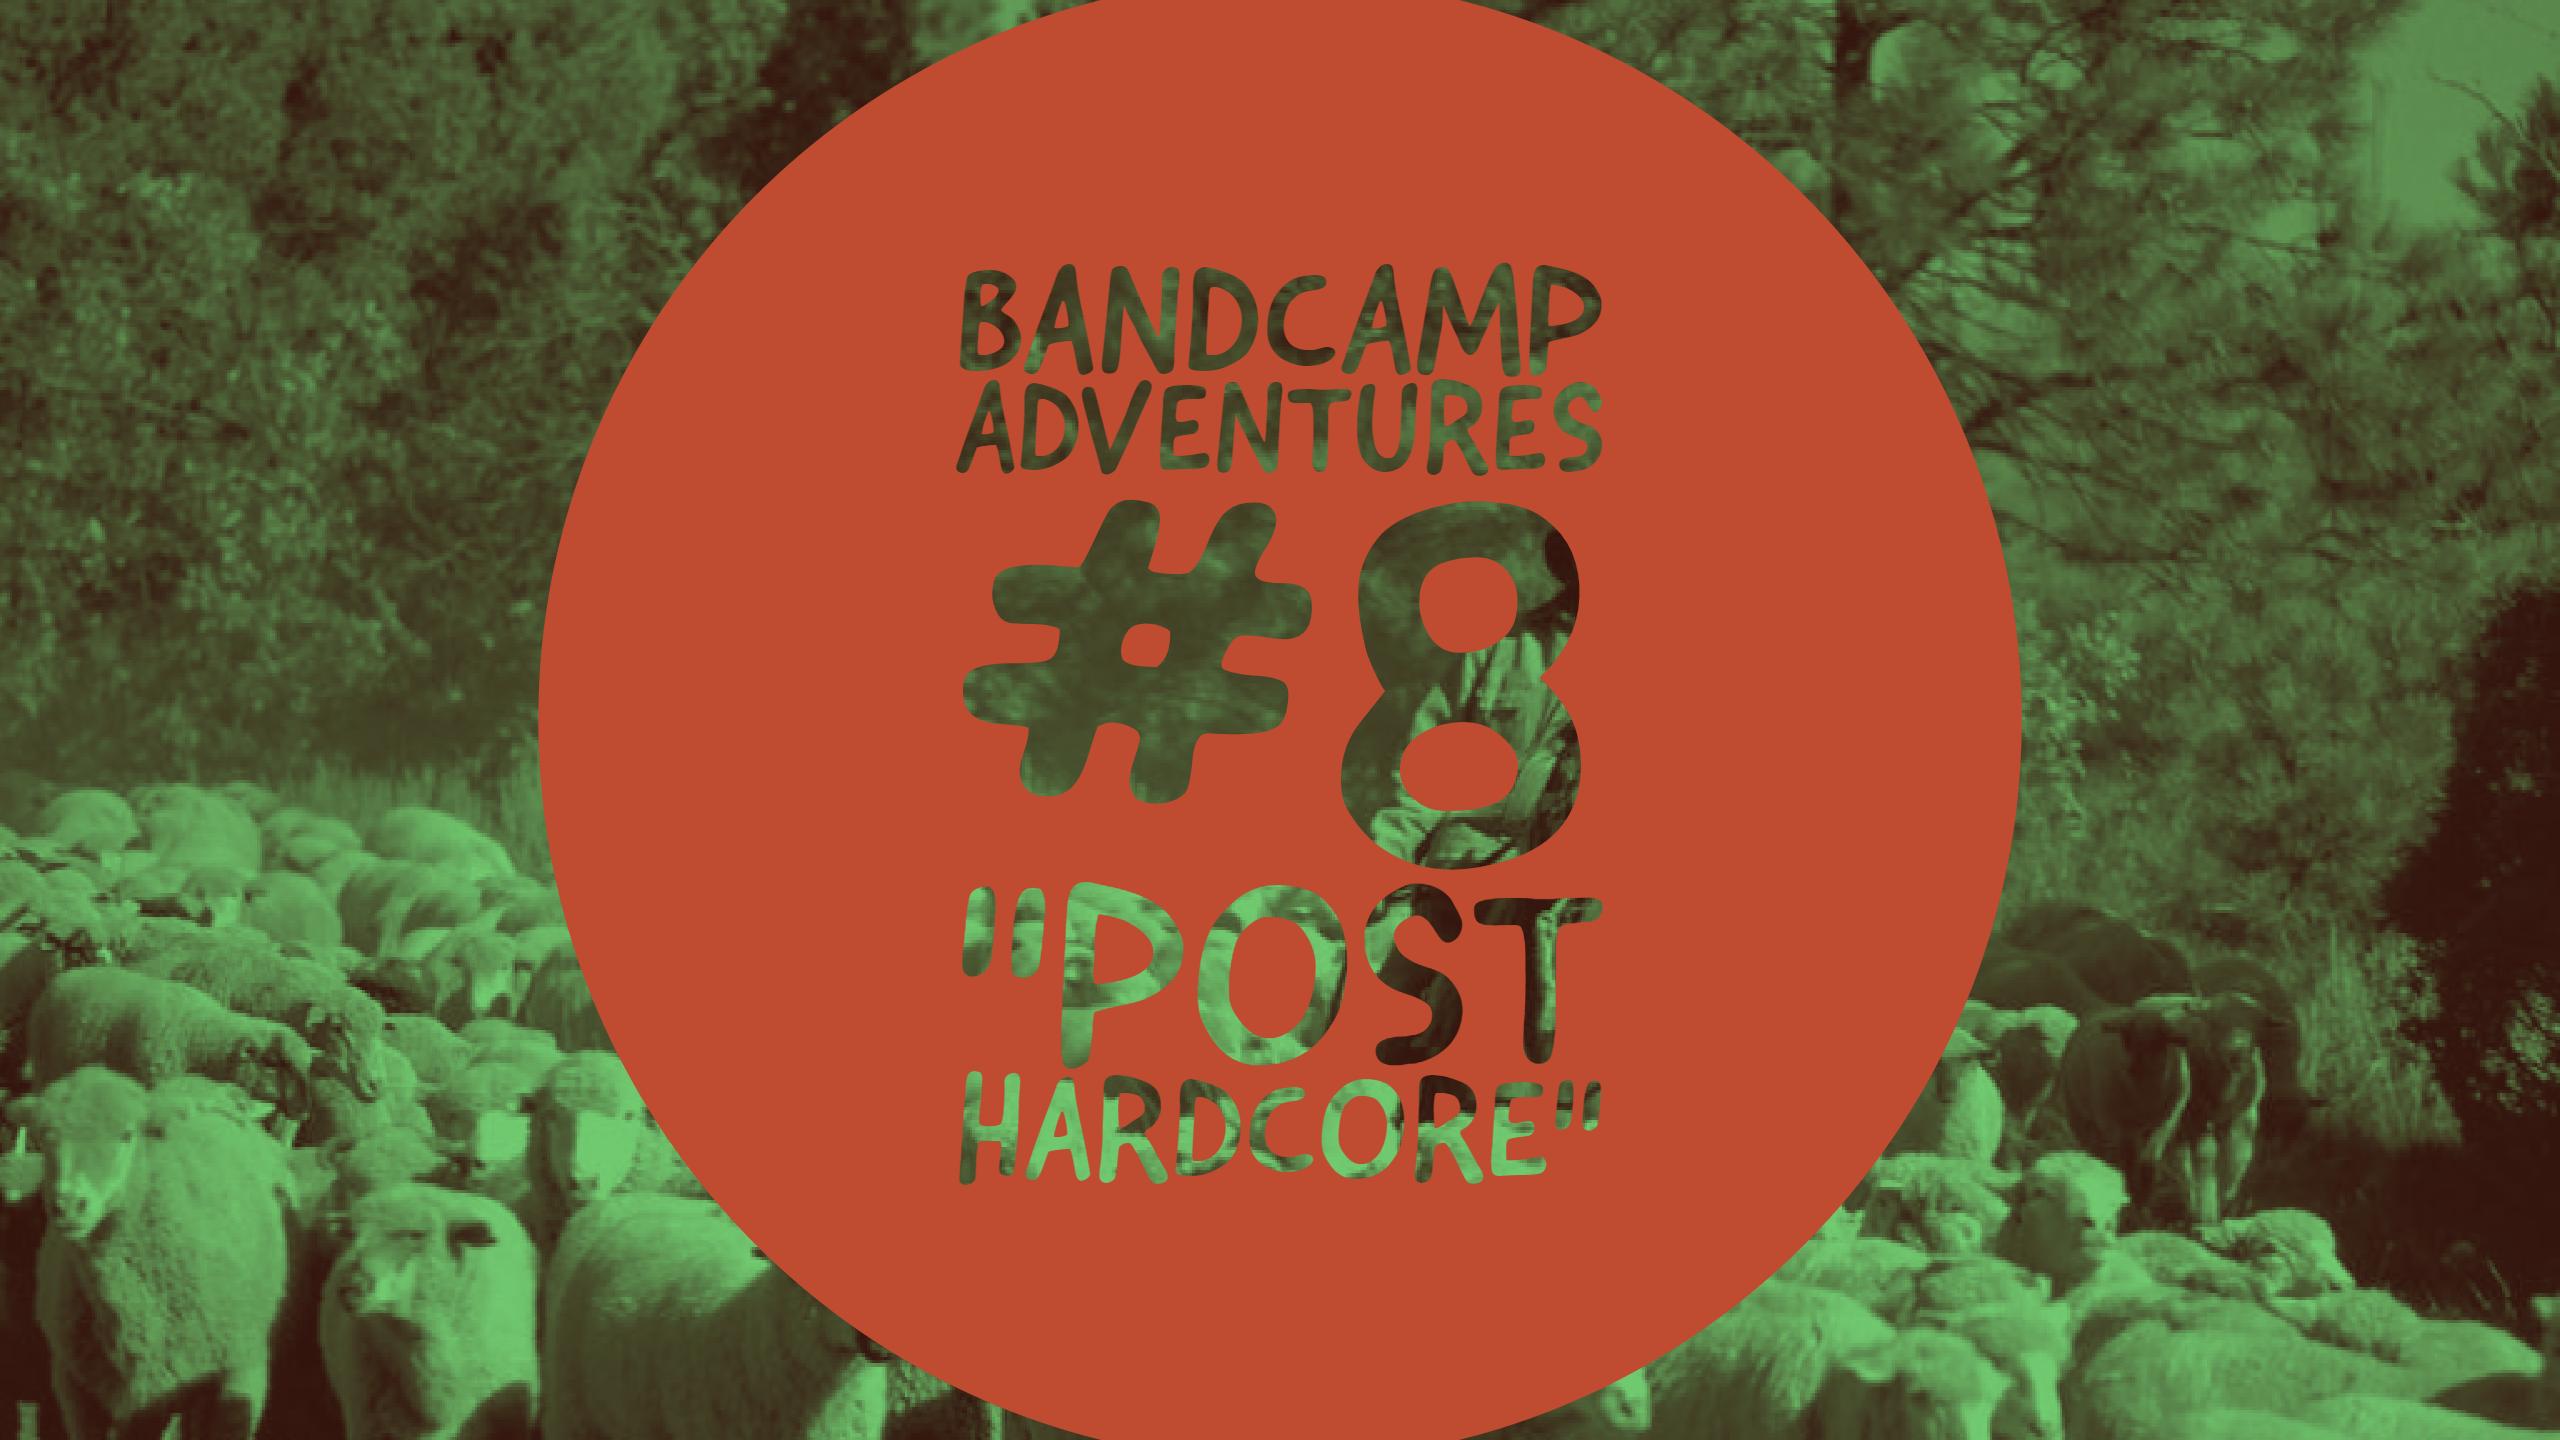 Bandcamp Adventures #8: “Post Hardcore”